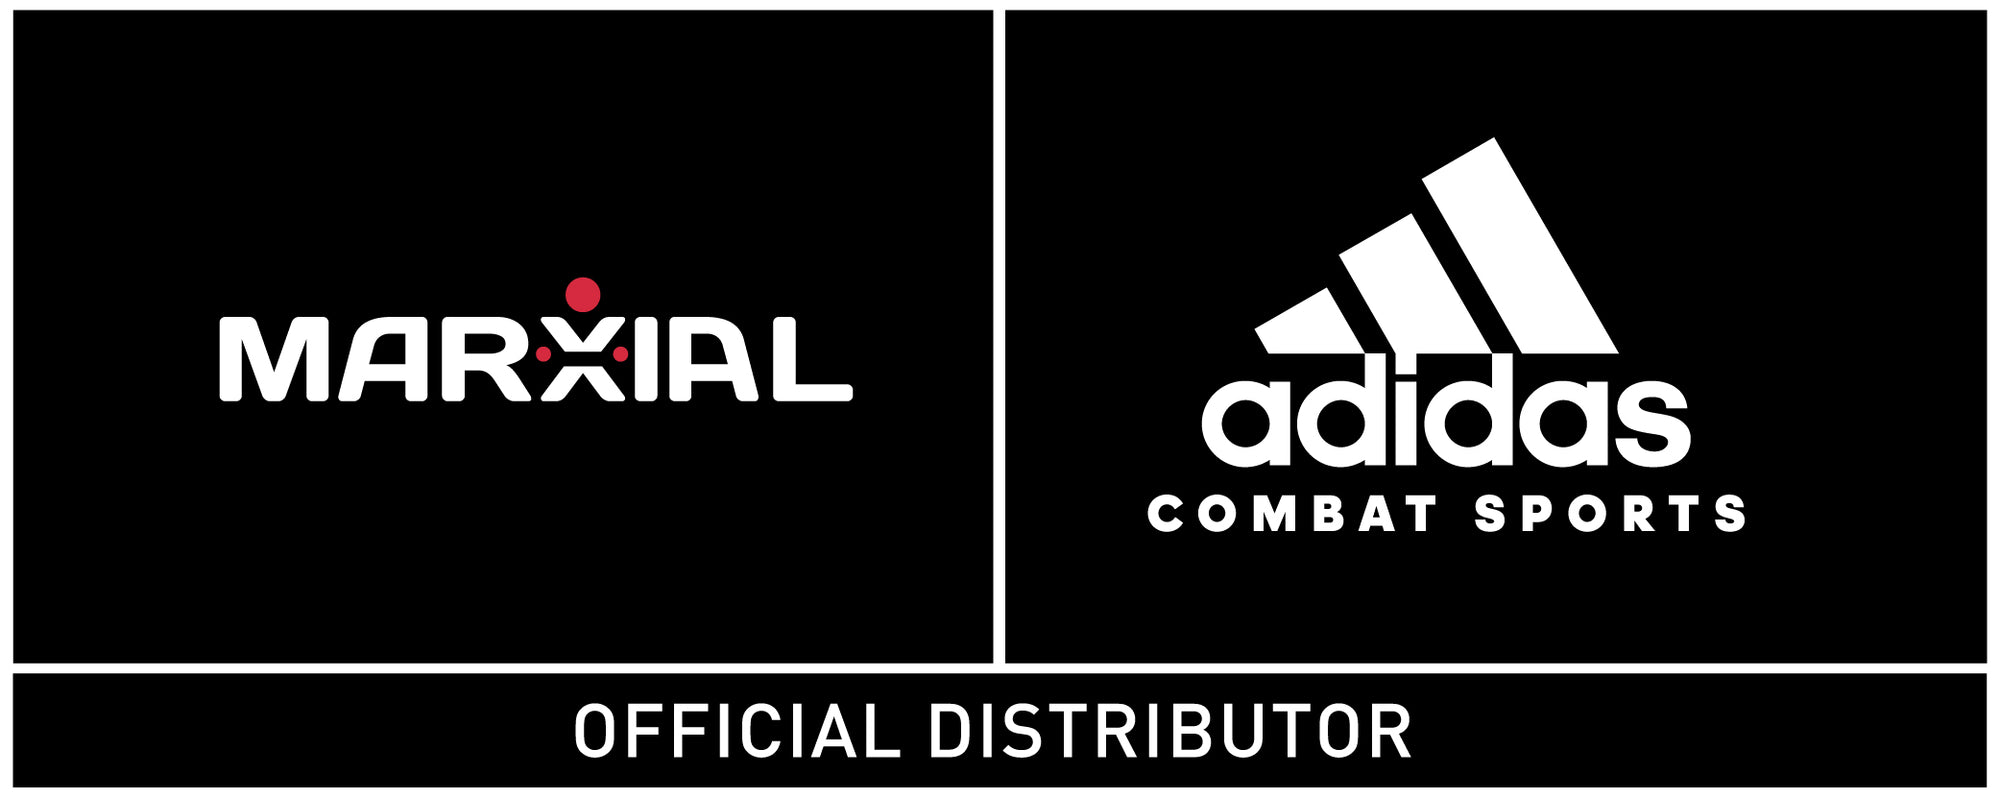 MARXIAL | Distribuidor oficial Adidas Combat Sports en Perú